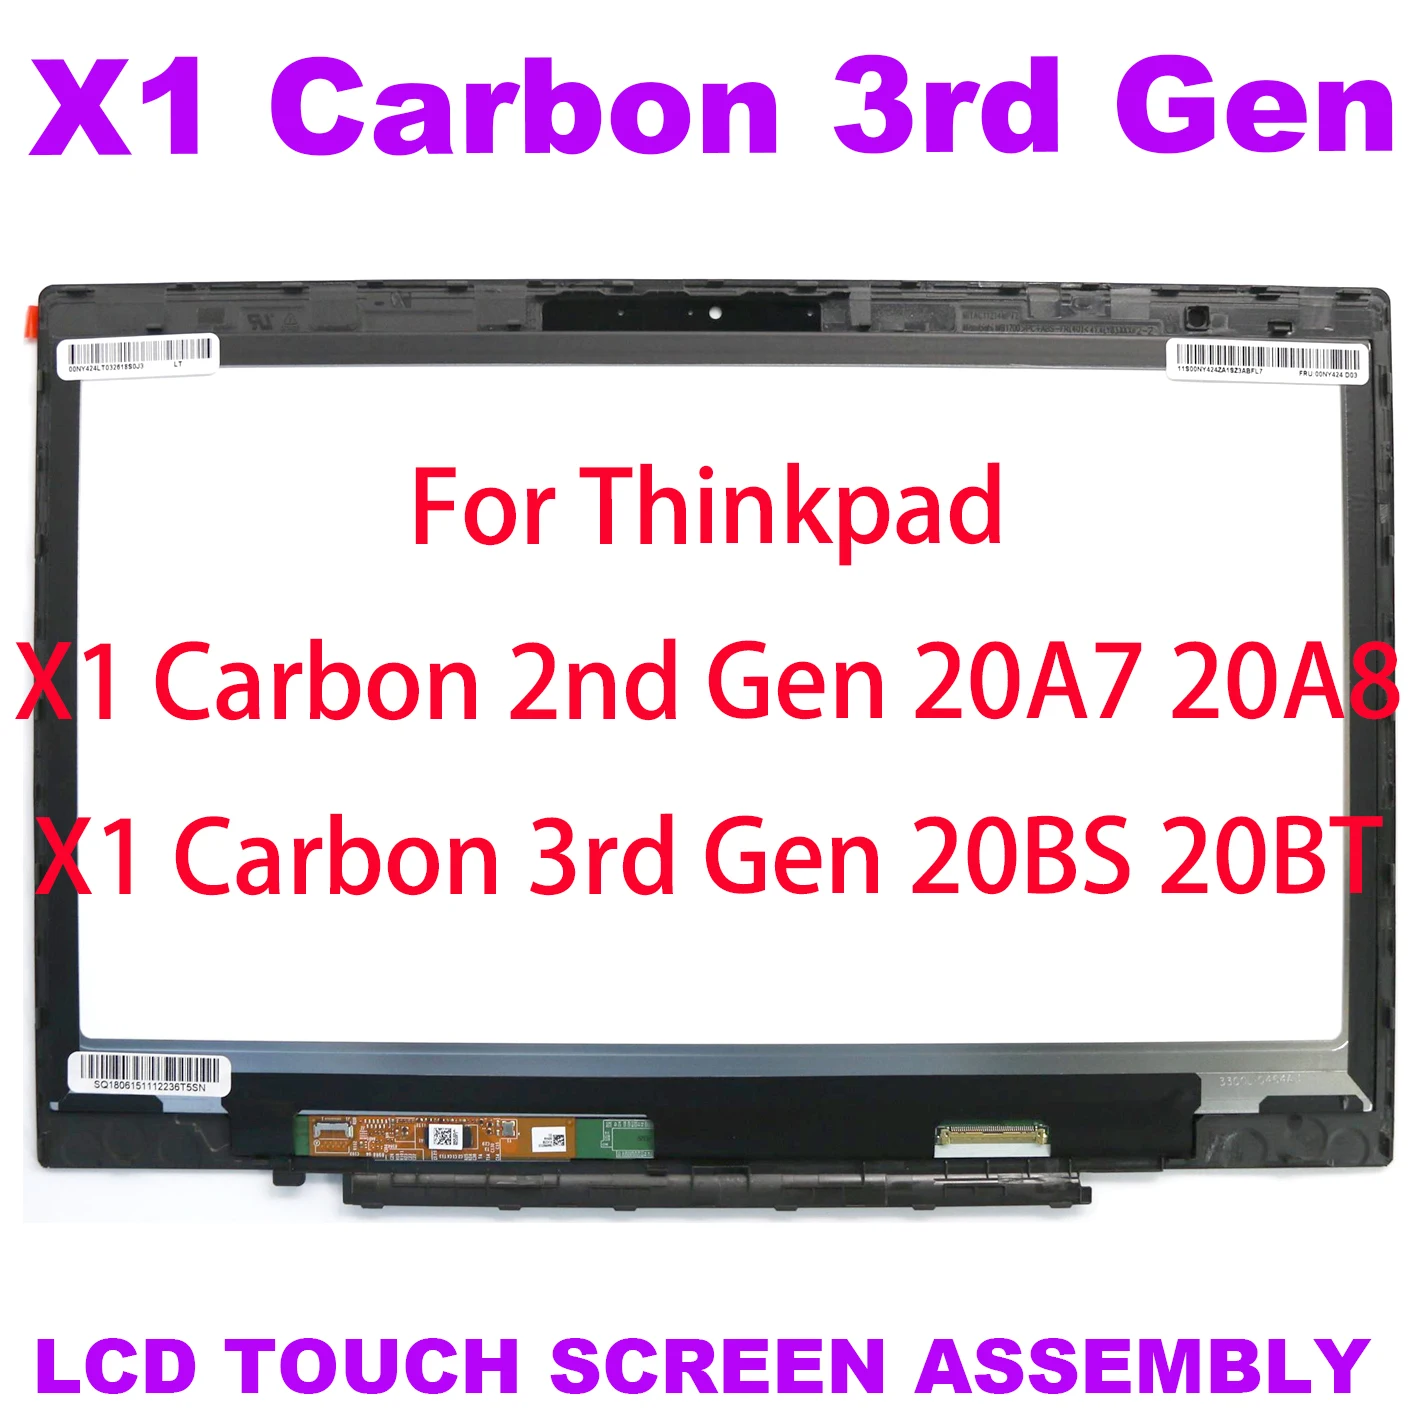 Wqhd 2560*1440 LCDタッチスクリーン,14インチ,デジタイザーマウント,Lenovo x1,100% 世代,20a7,20a8用